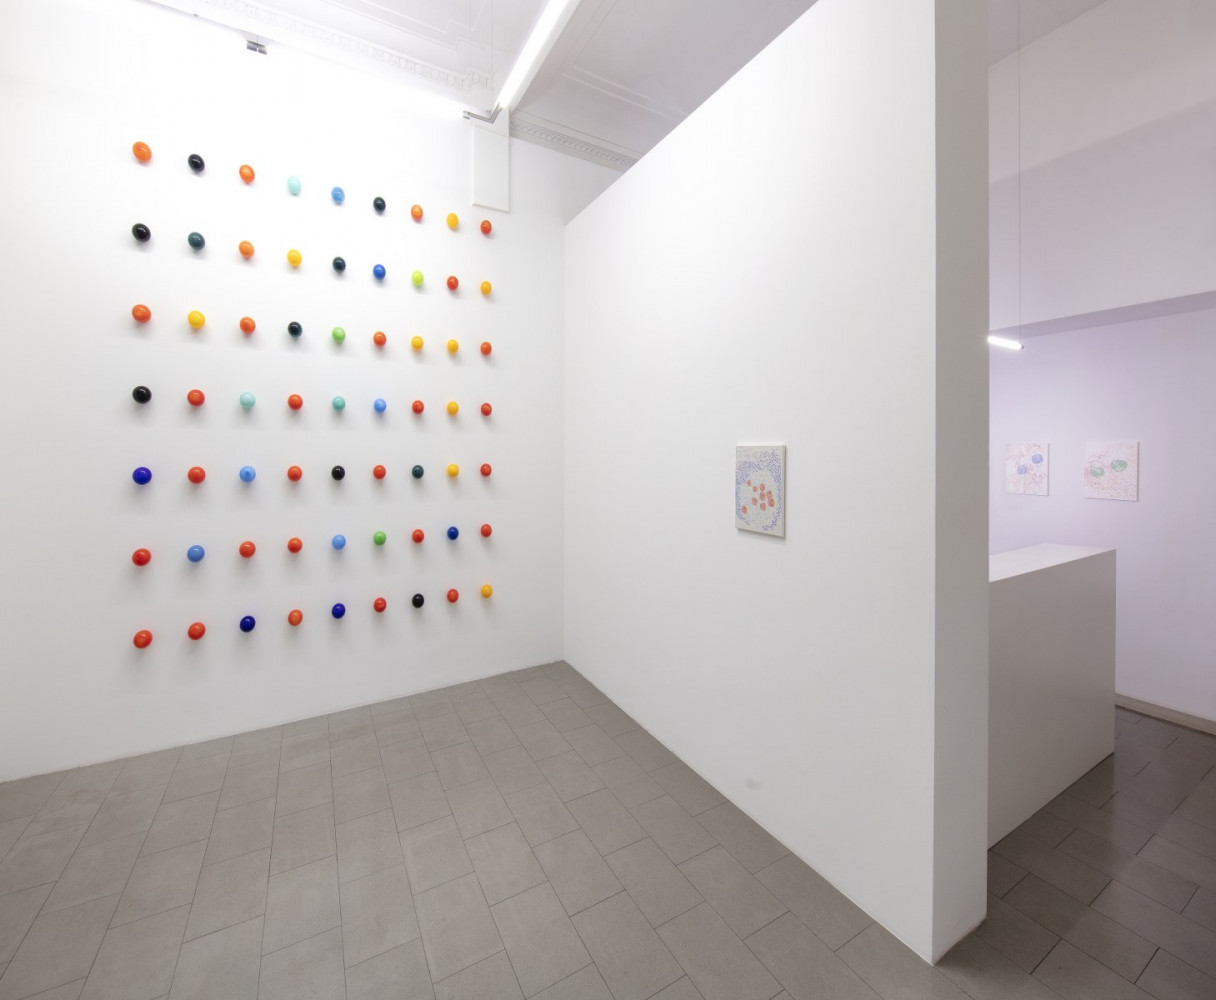 Véronique Arnold, Installationsansicht, Buchmann Lugano, 2023–2023